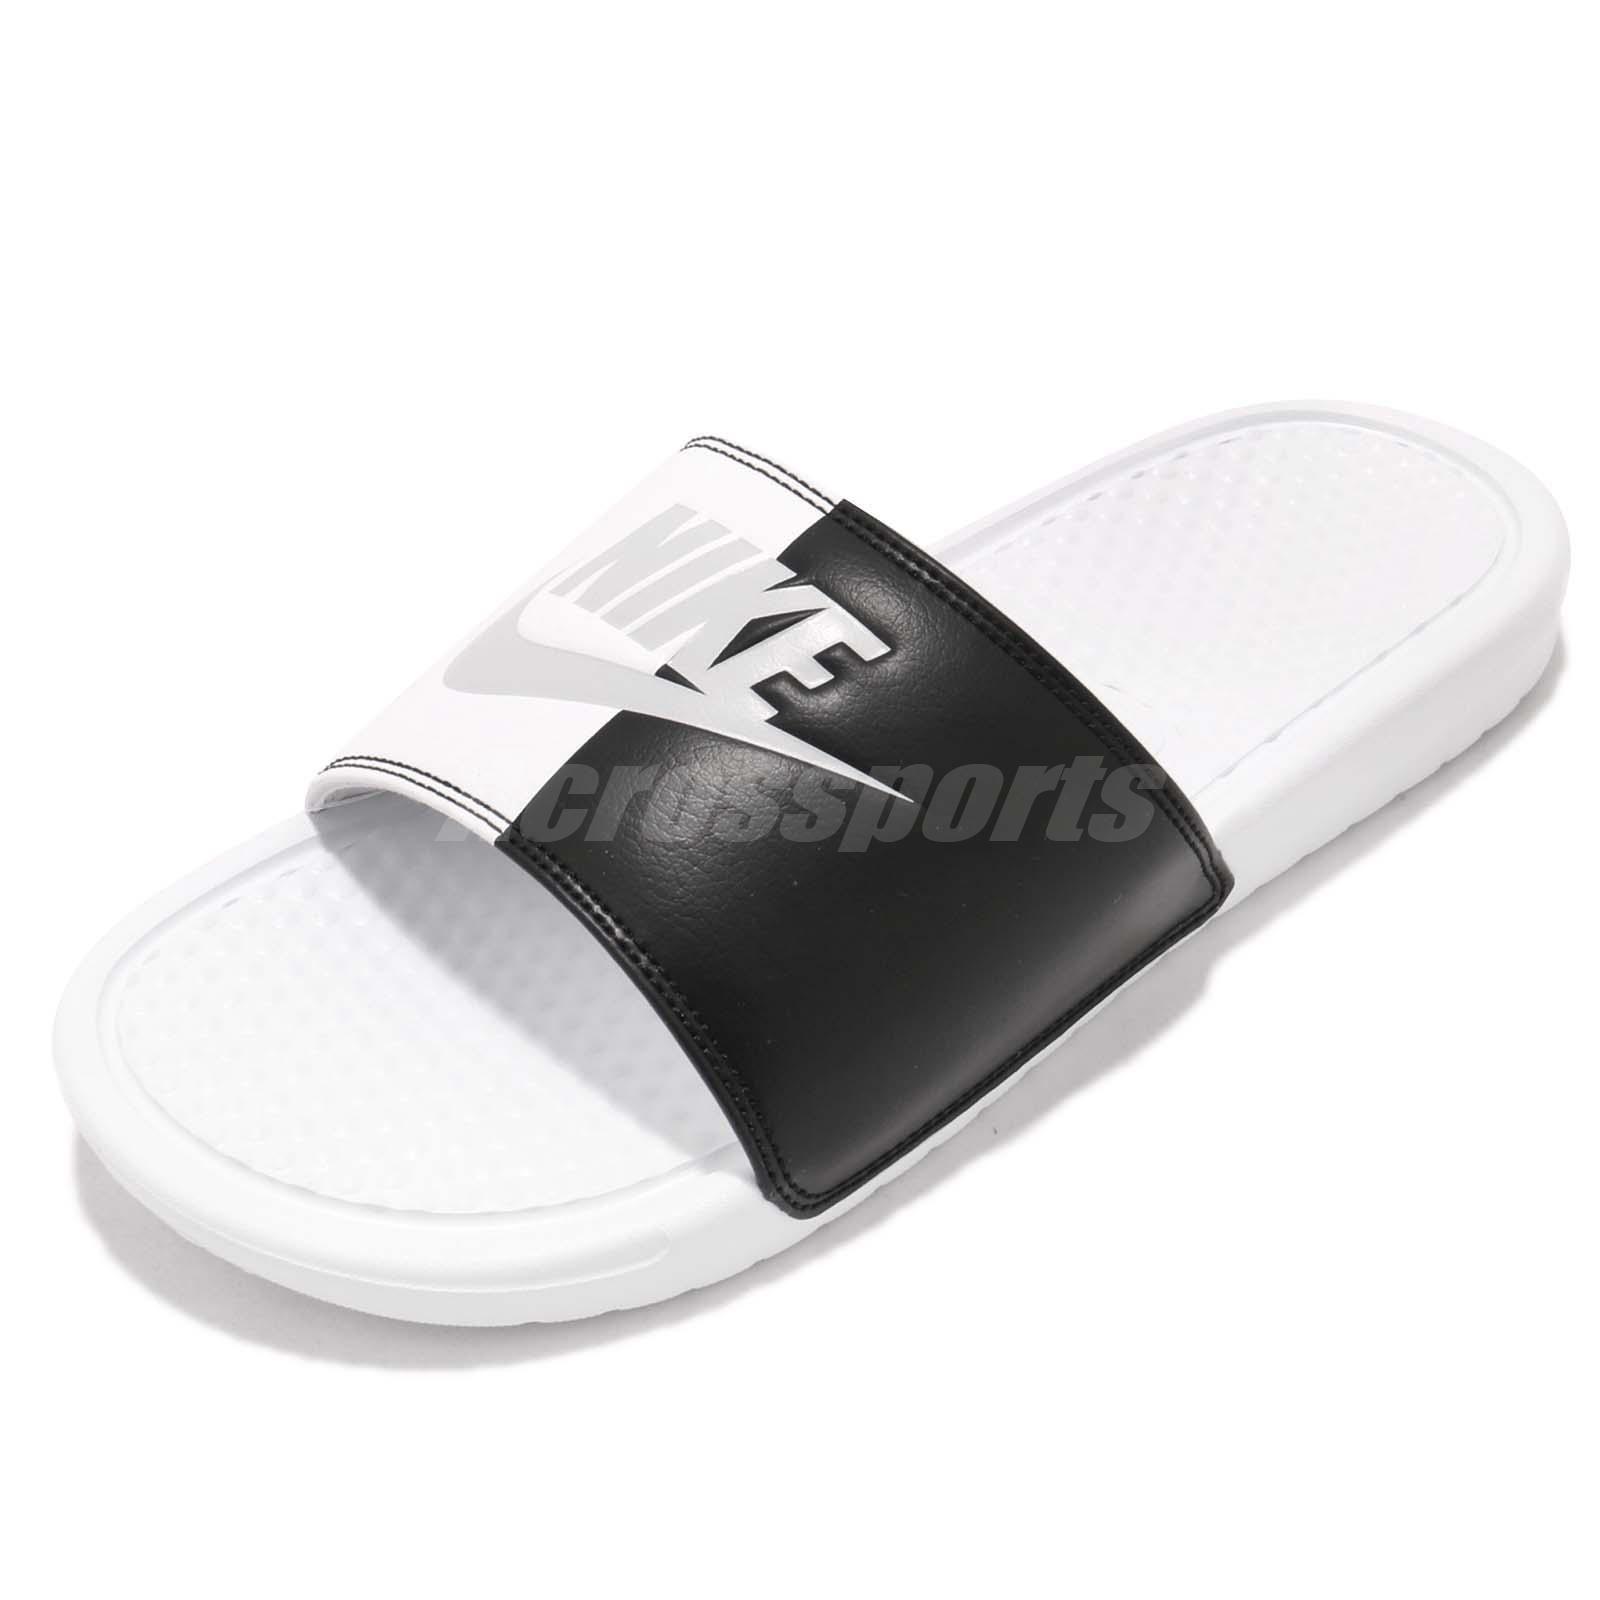 Yin Yang Black and White Box Logo - Nike Wmns Benassi JDI White Black Yin Yang Women Sports Sandal